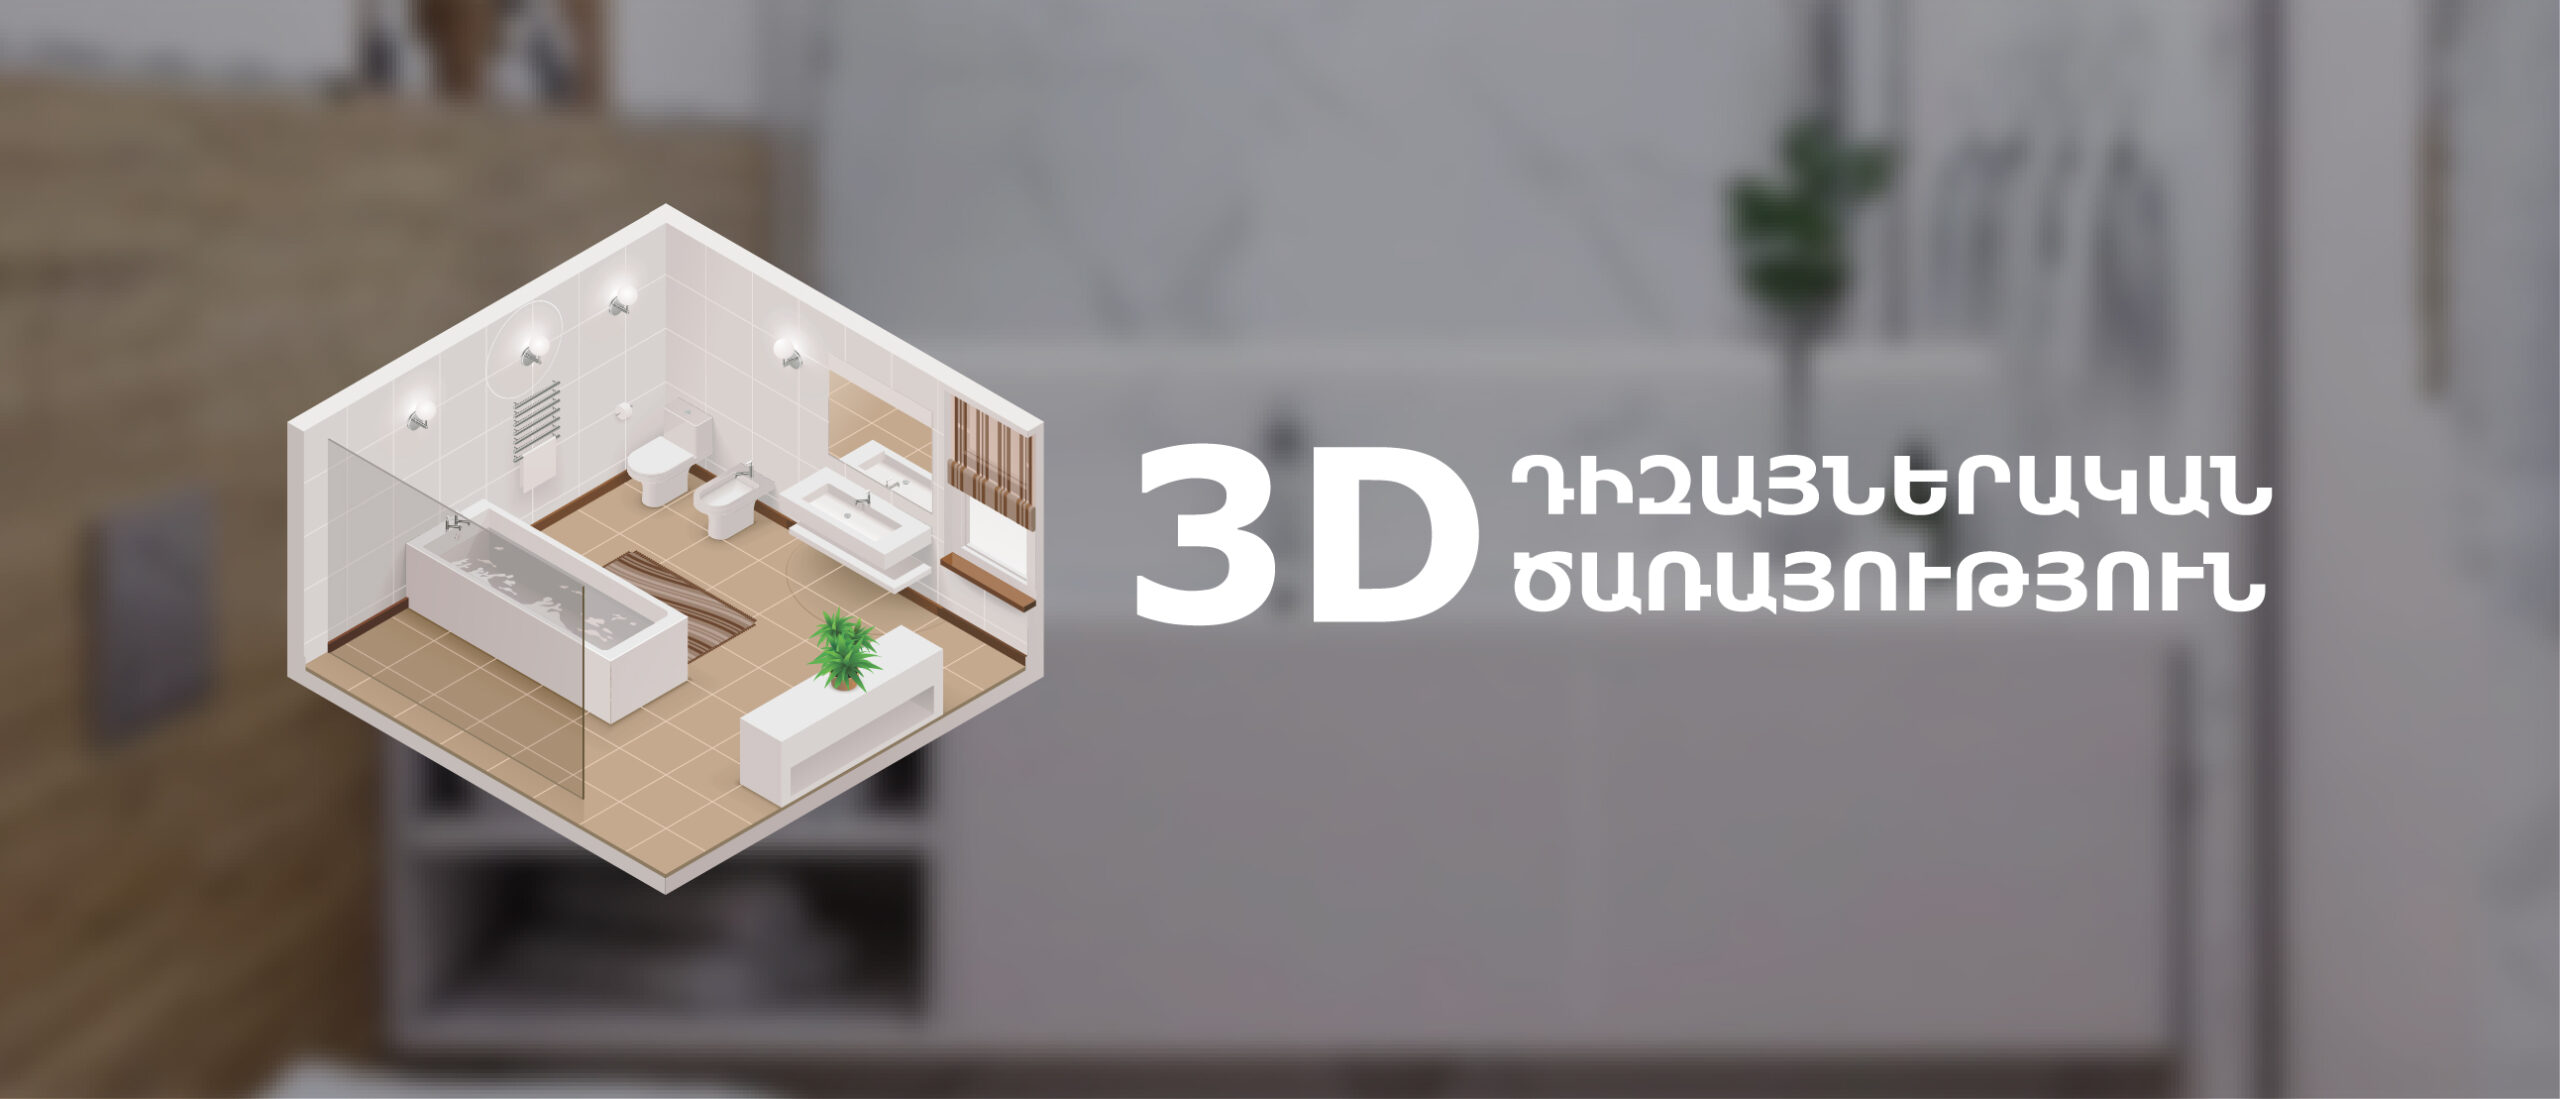 Լոգասենյակի 3D դիզայնի ծառայություն